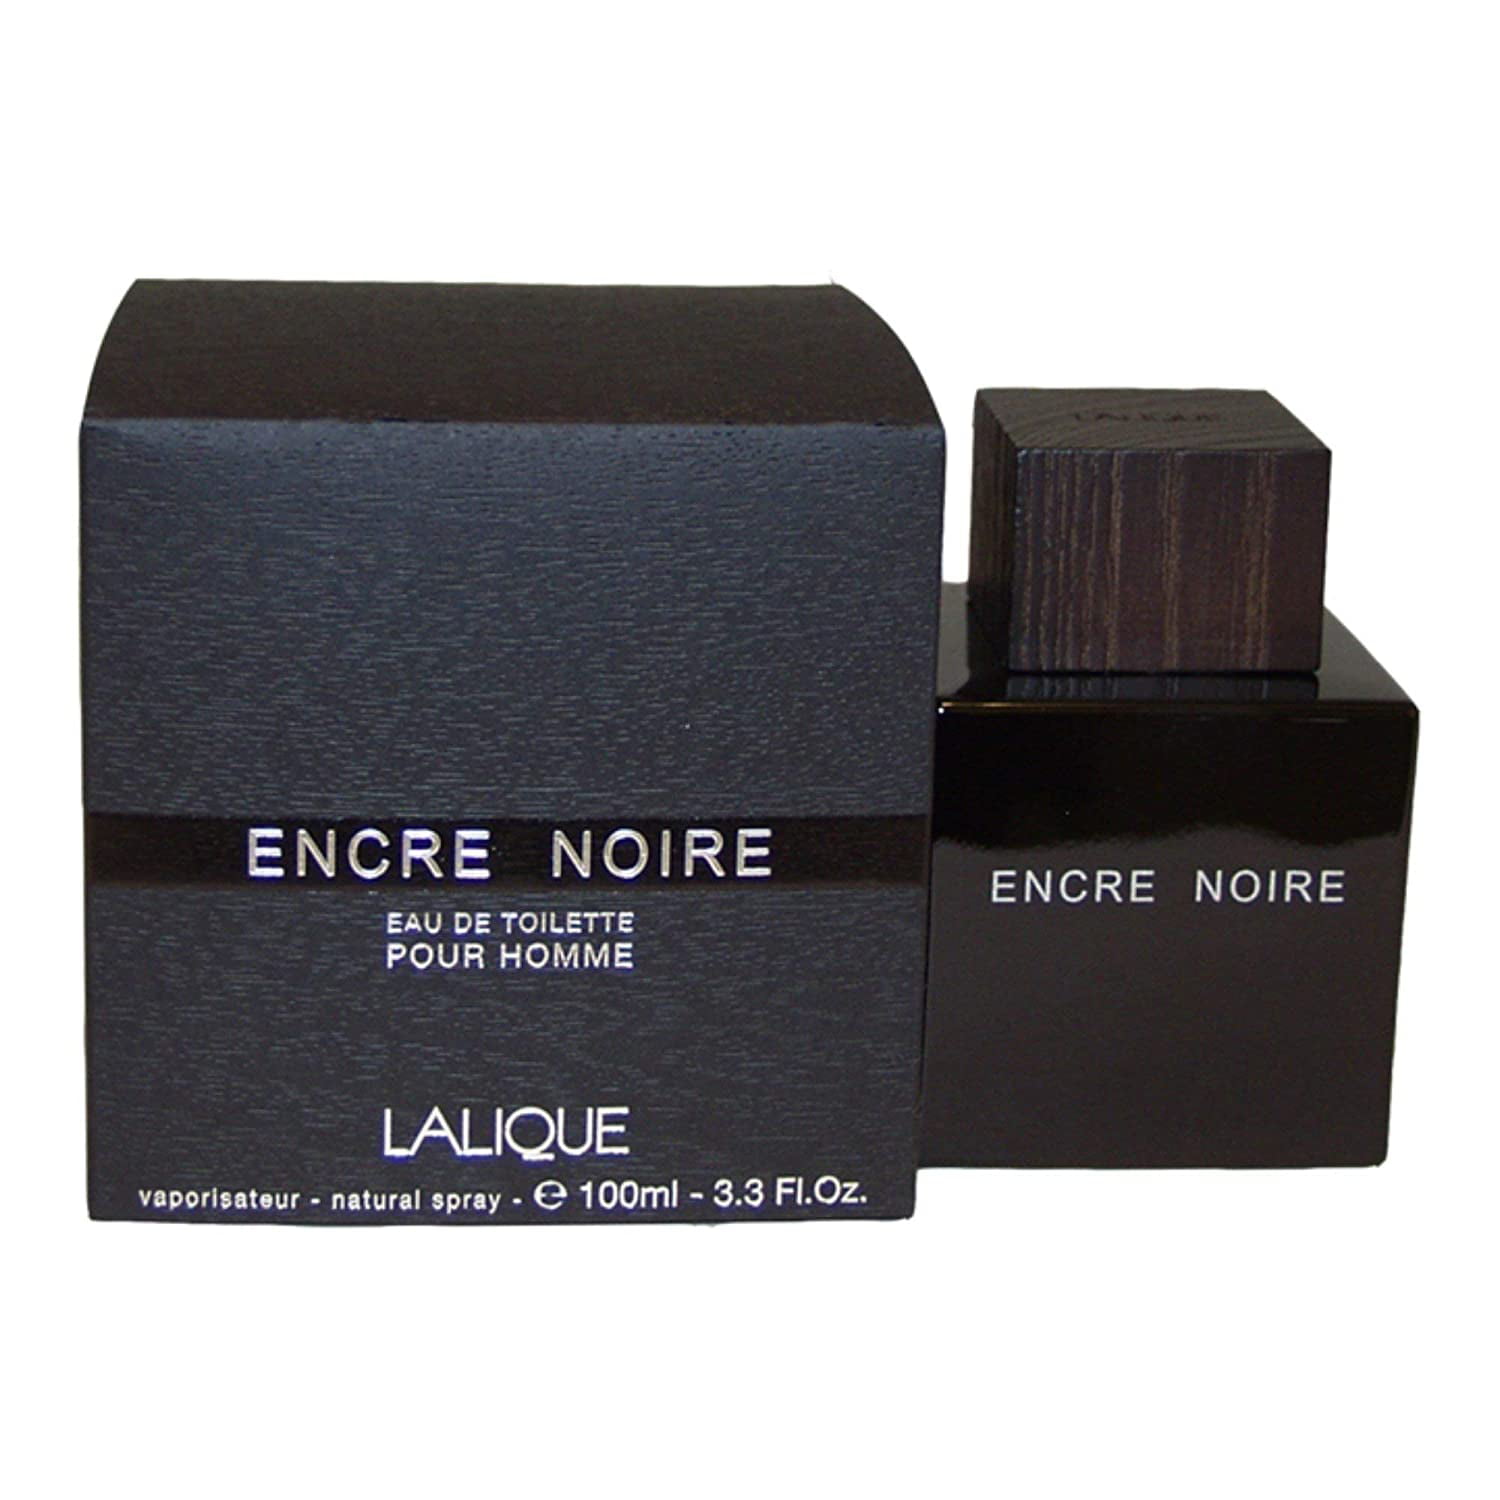 Lalique Encre Noire Eau de Toilette Spray - 3.3 fl oz bottle